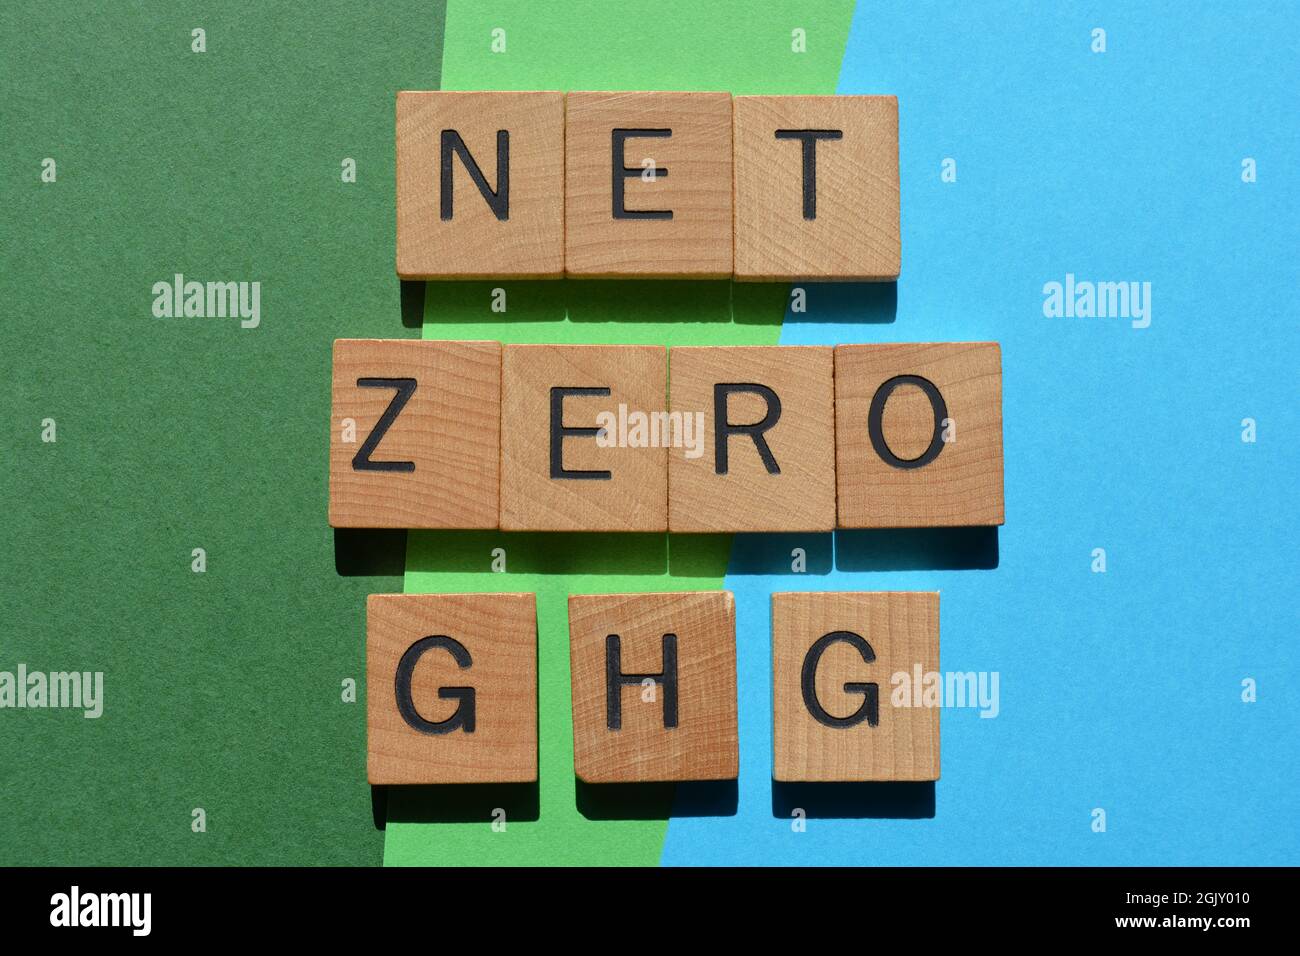 Net Zero GHG, mots en lettres de l'alphabet en bois isolés sur fond bleu et vert Banque D'Images